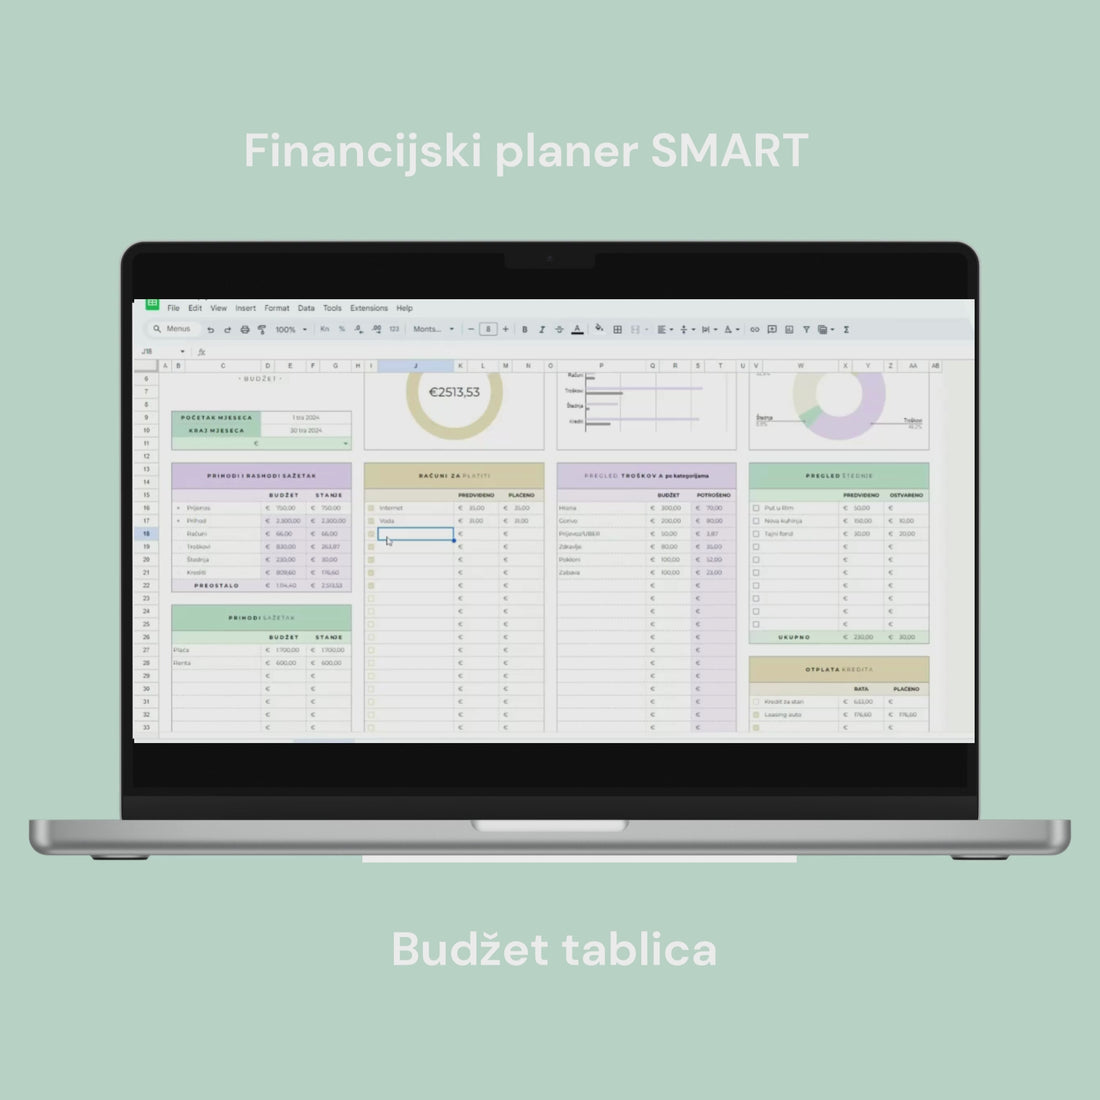 Financijski planer SMART